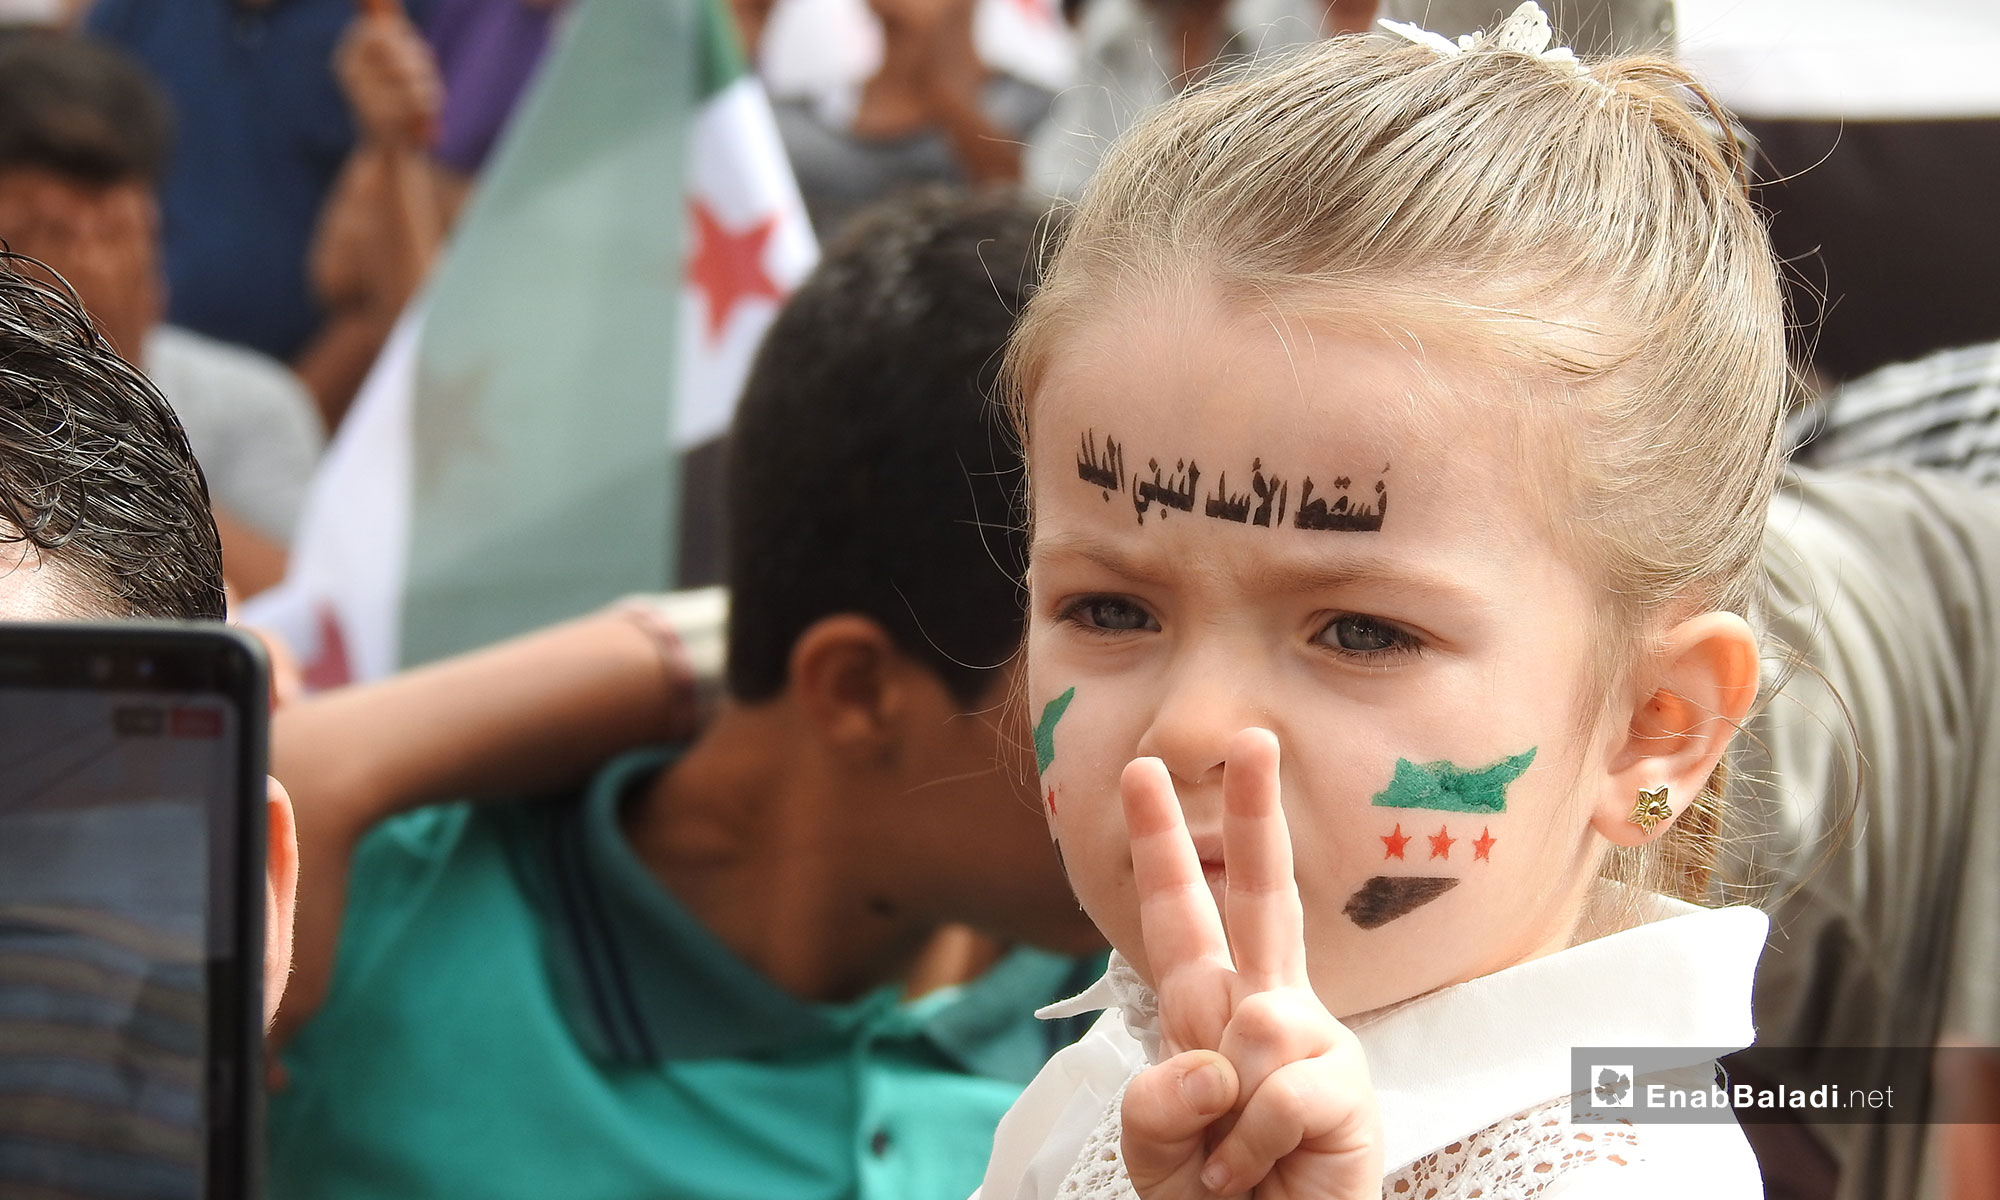 طفلة تشارك في مظاهرة مدينة اعزاز بريف حلب الشمالي - 12 من تشرين الأول 2018 (عنب بلدي)